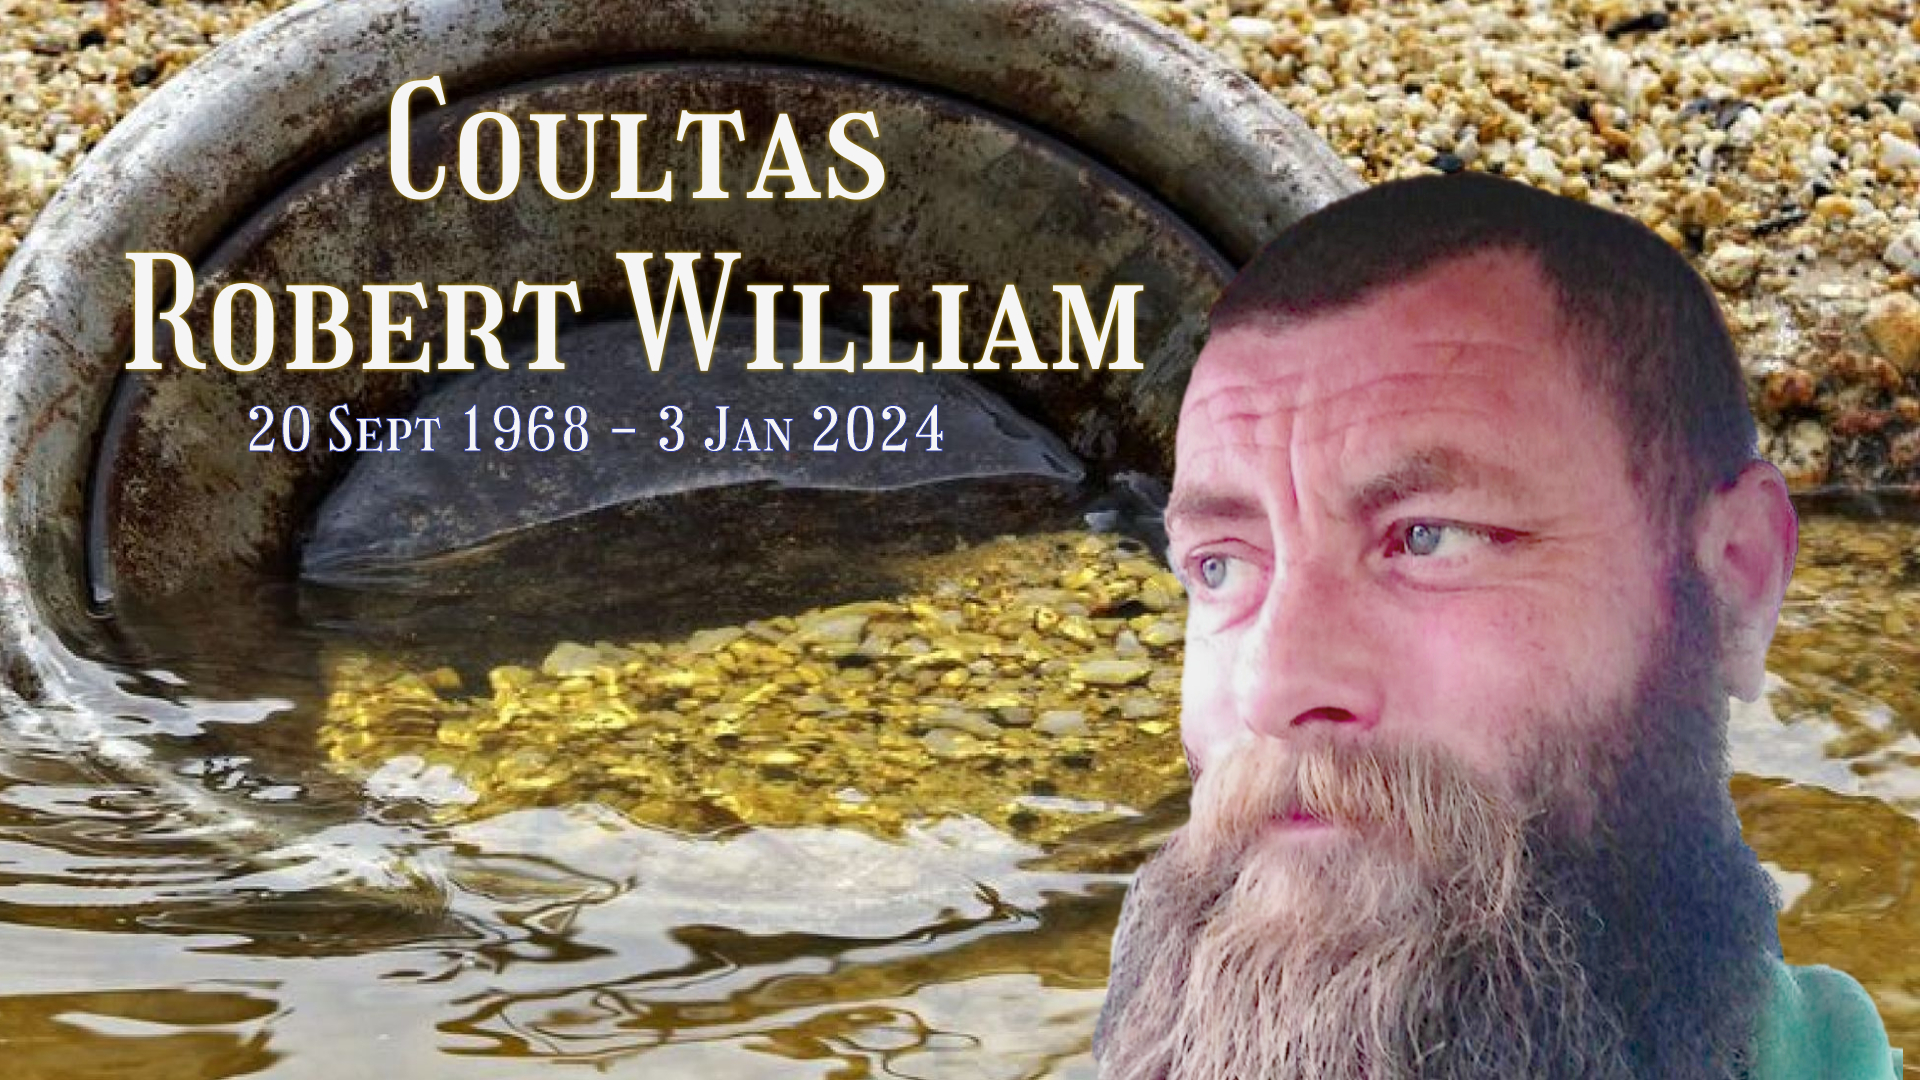 COULTAS, Robert William